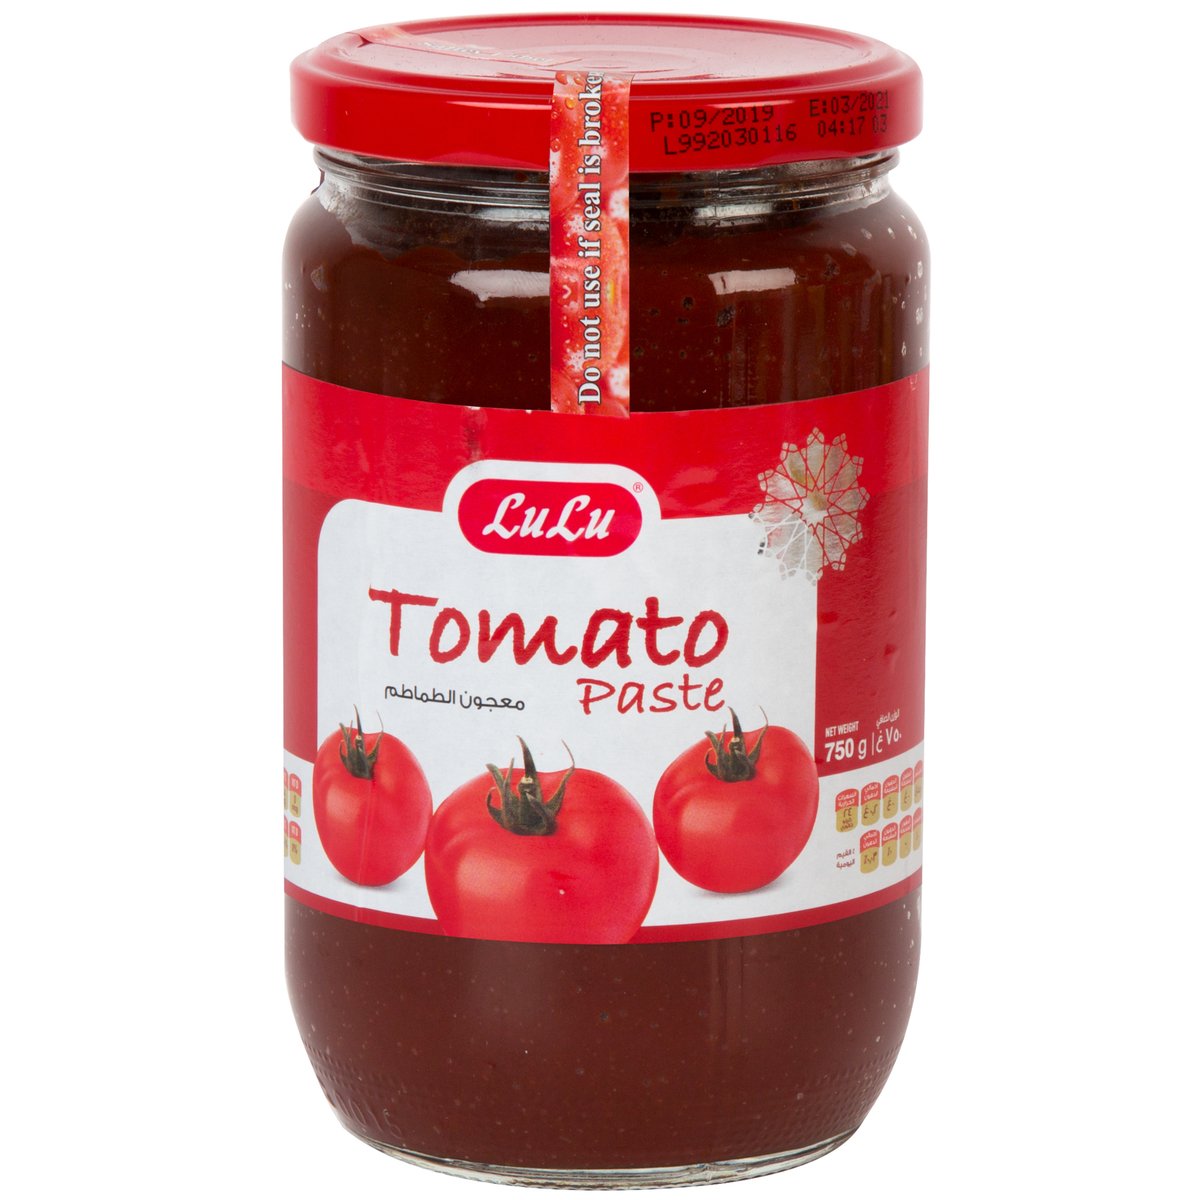 LuLu Tomato Paste 750g